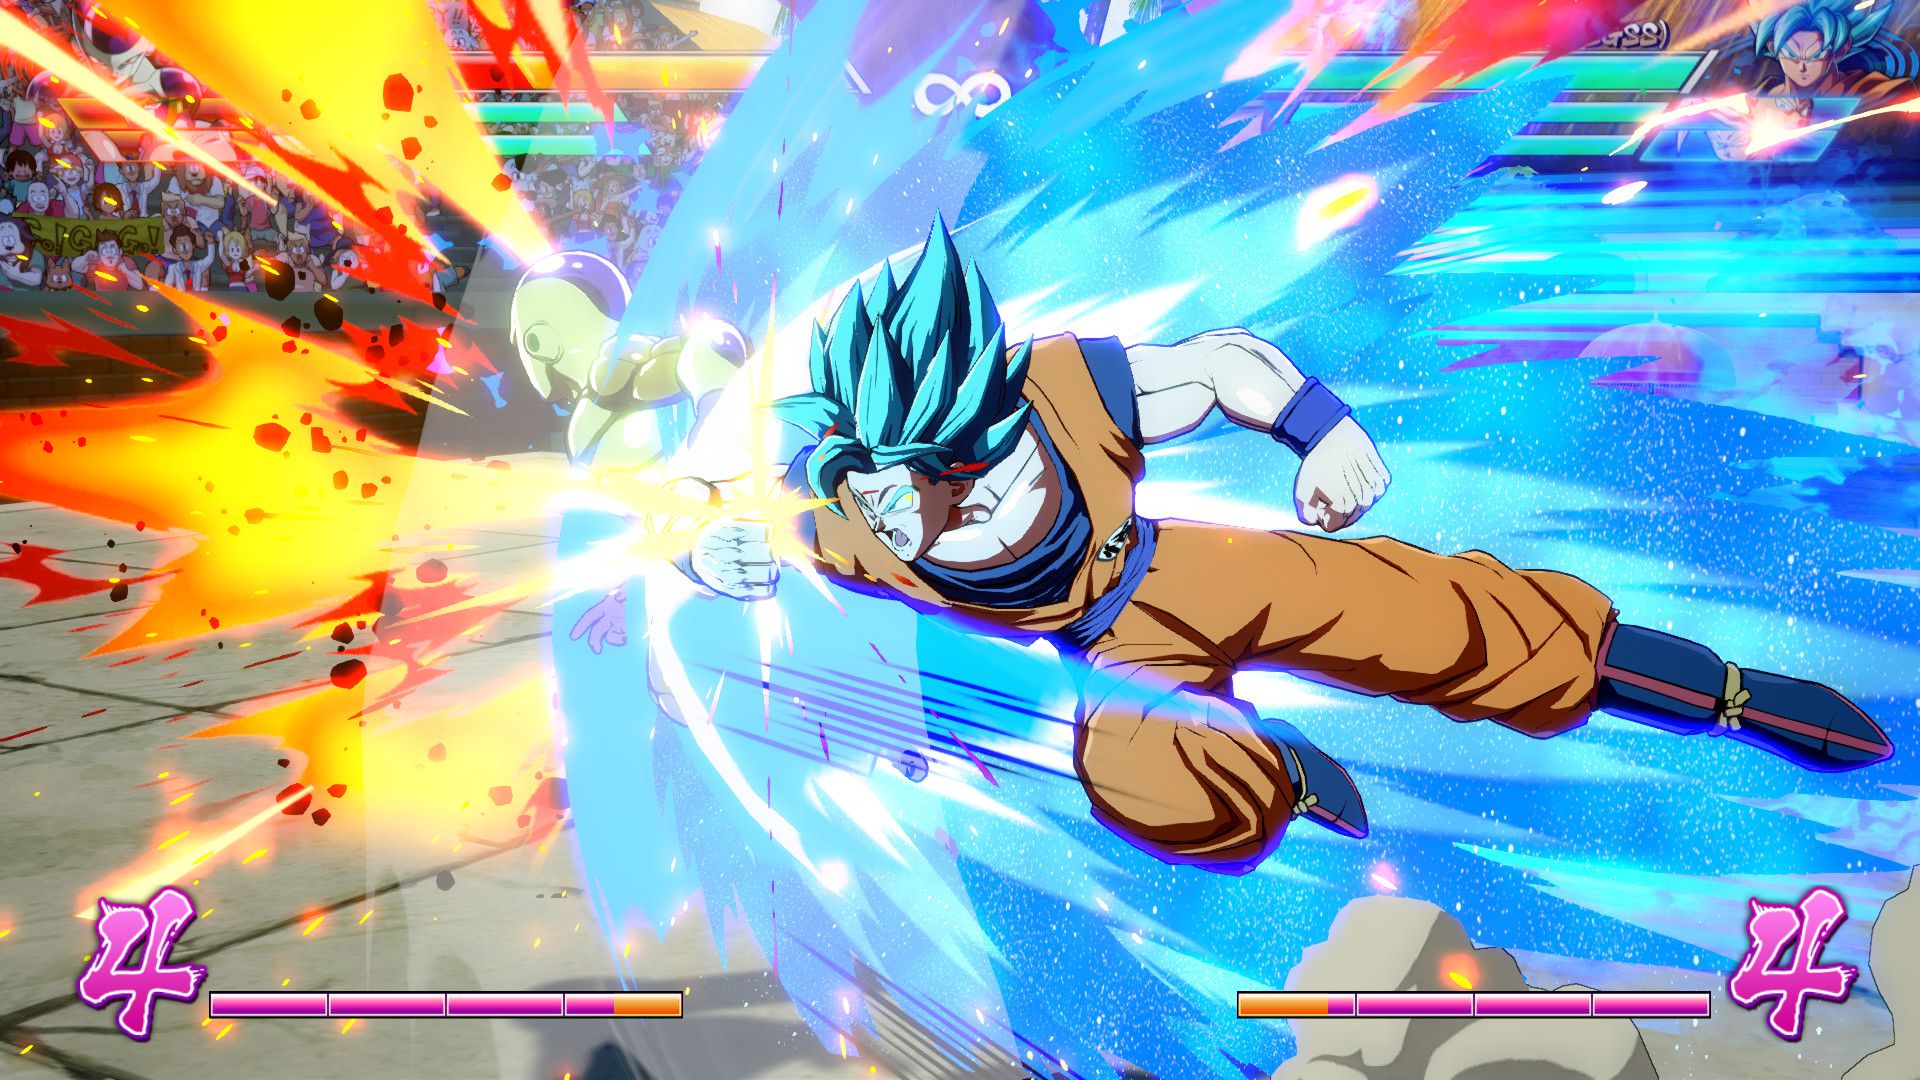 Goku en modo Dios Super Saiyajin es otra de las versiones que se encuentra en el catálogo de luchadores.